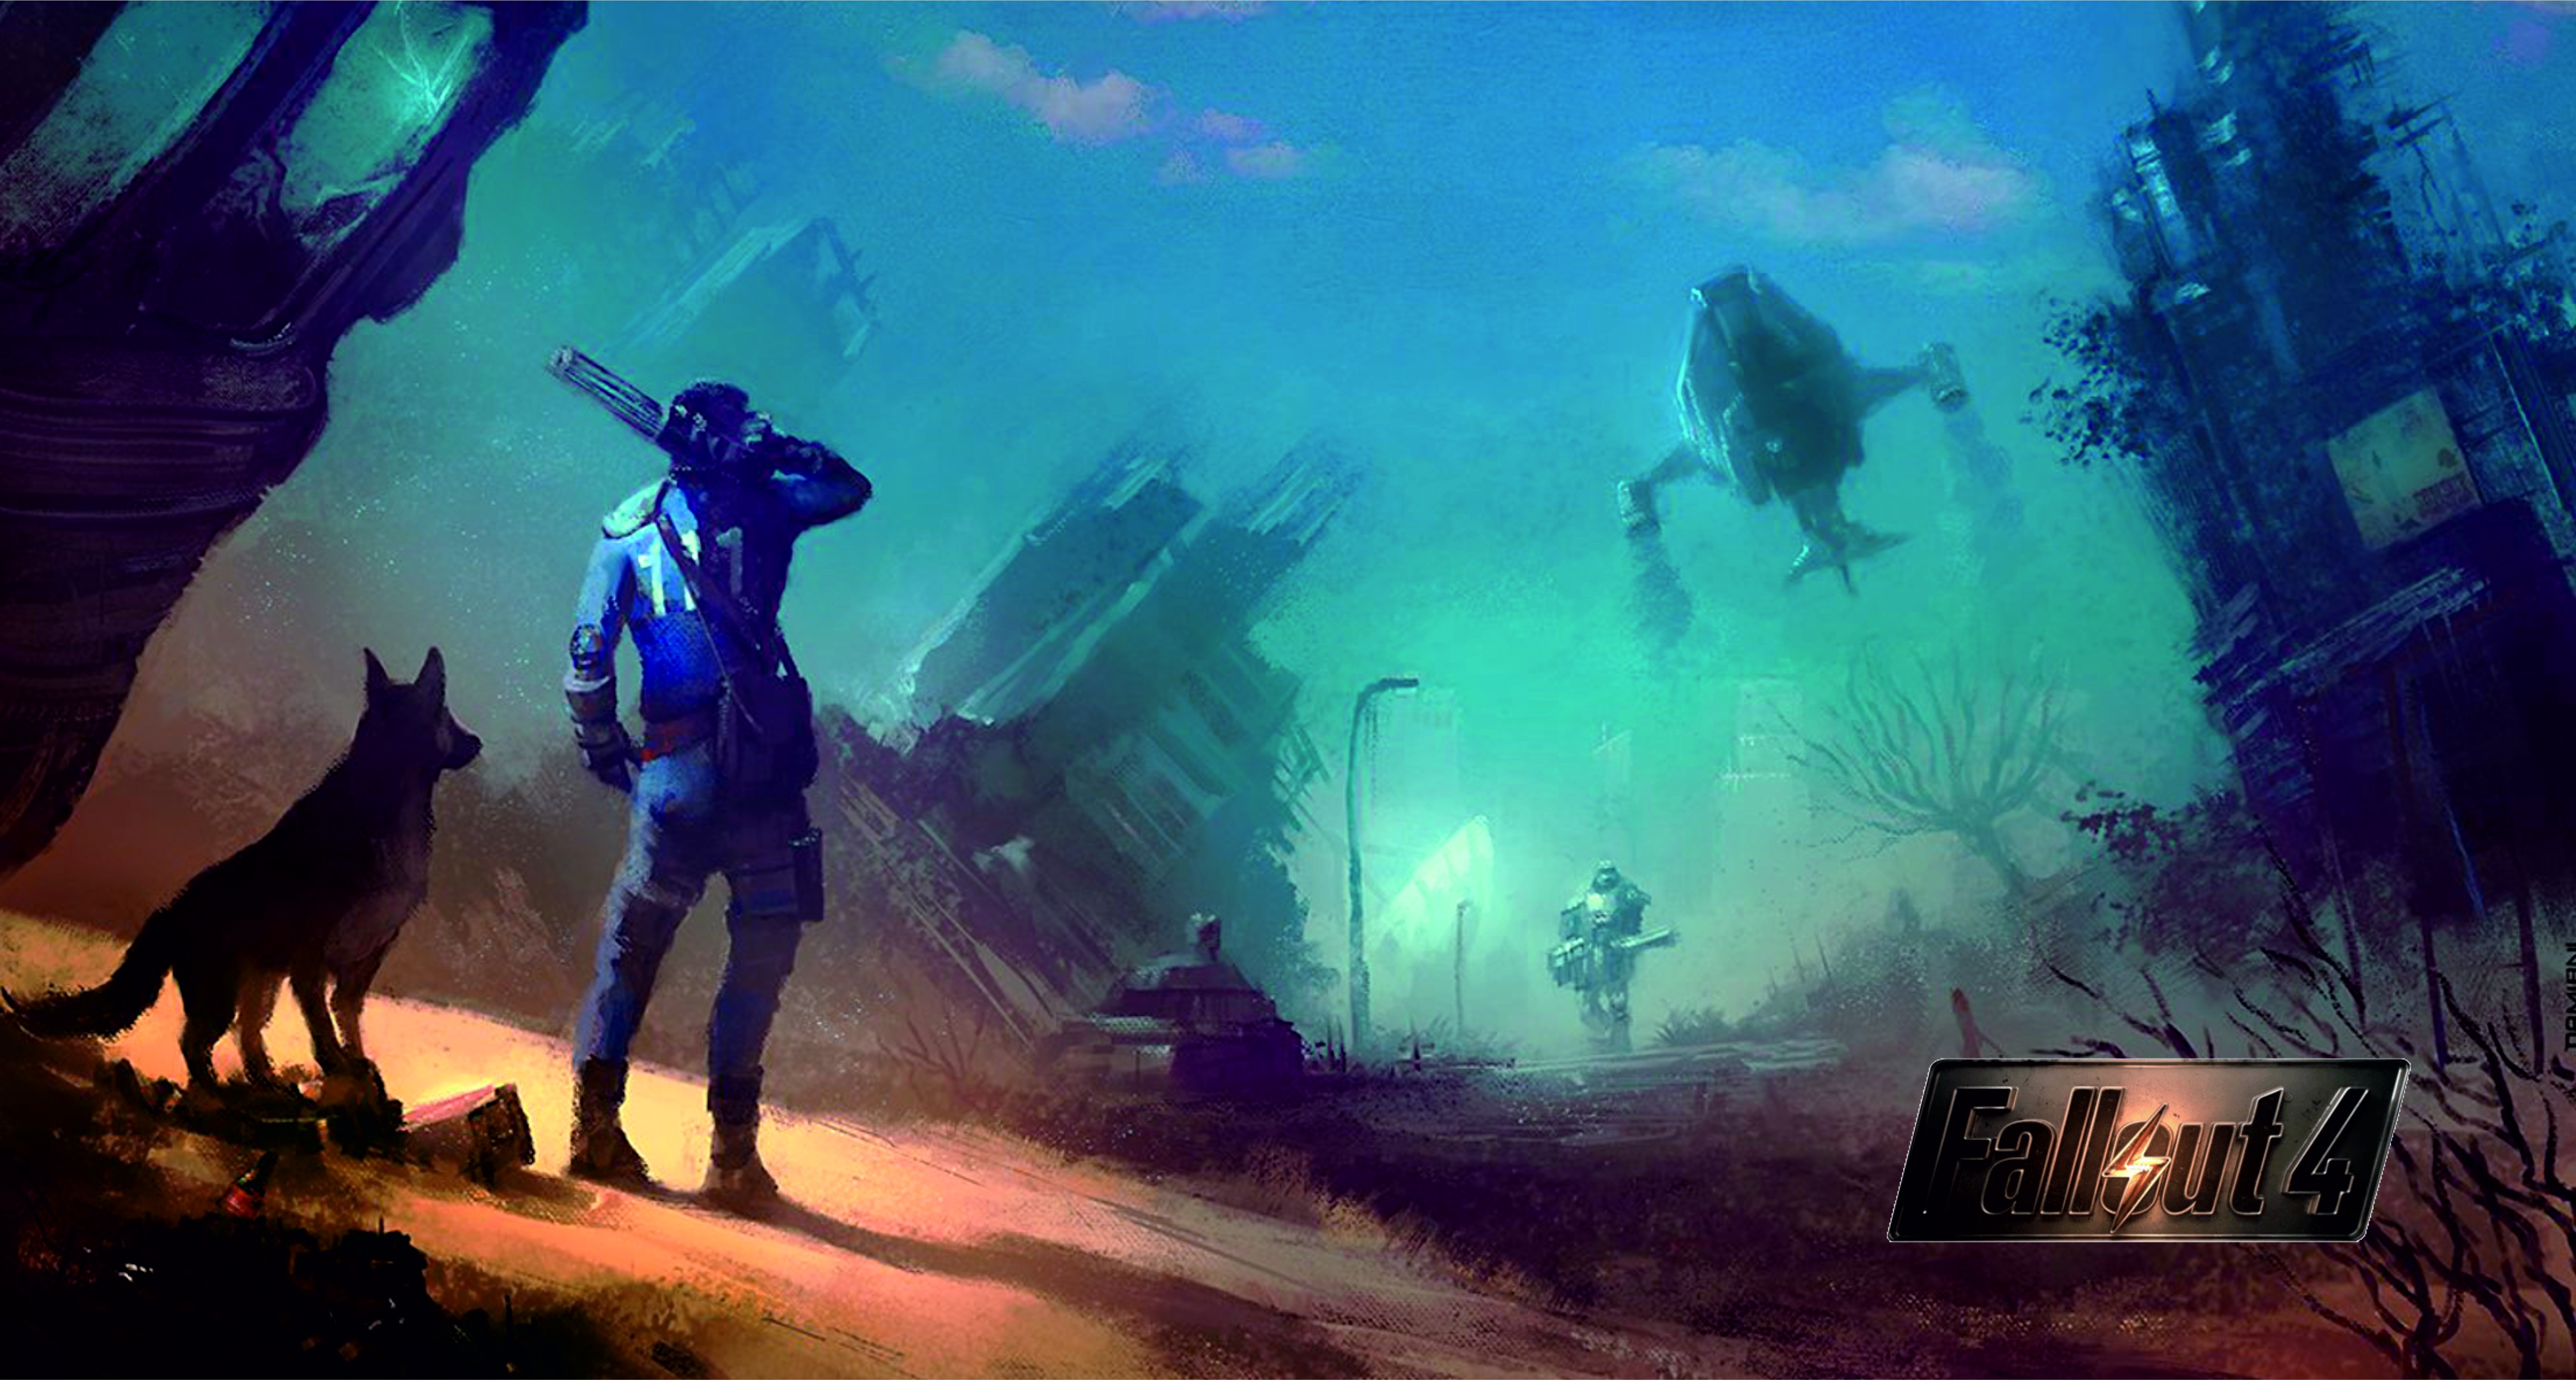 Fallout, Fallout 4 Wallpaper